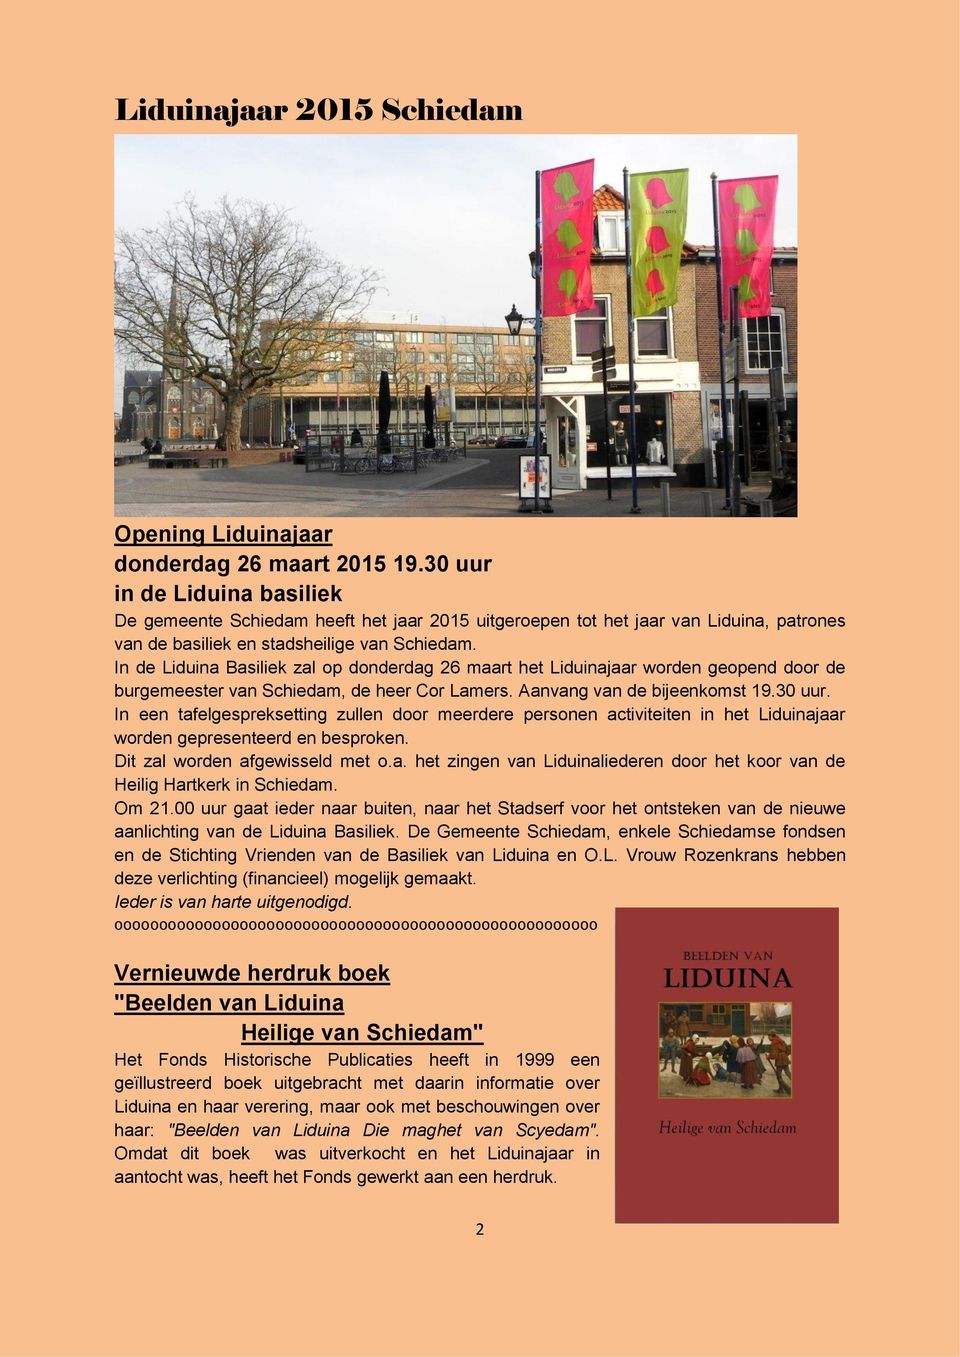 In de Liduina Basiliek zal op donderdag 26 maart het Liduinajaar worden geopend door de burgemeester van Schiedam, de heer Cor Lamers. Aanvang van de bijeenkomst 19.30 uur.